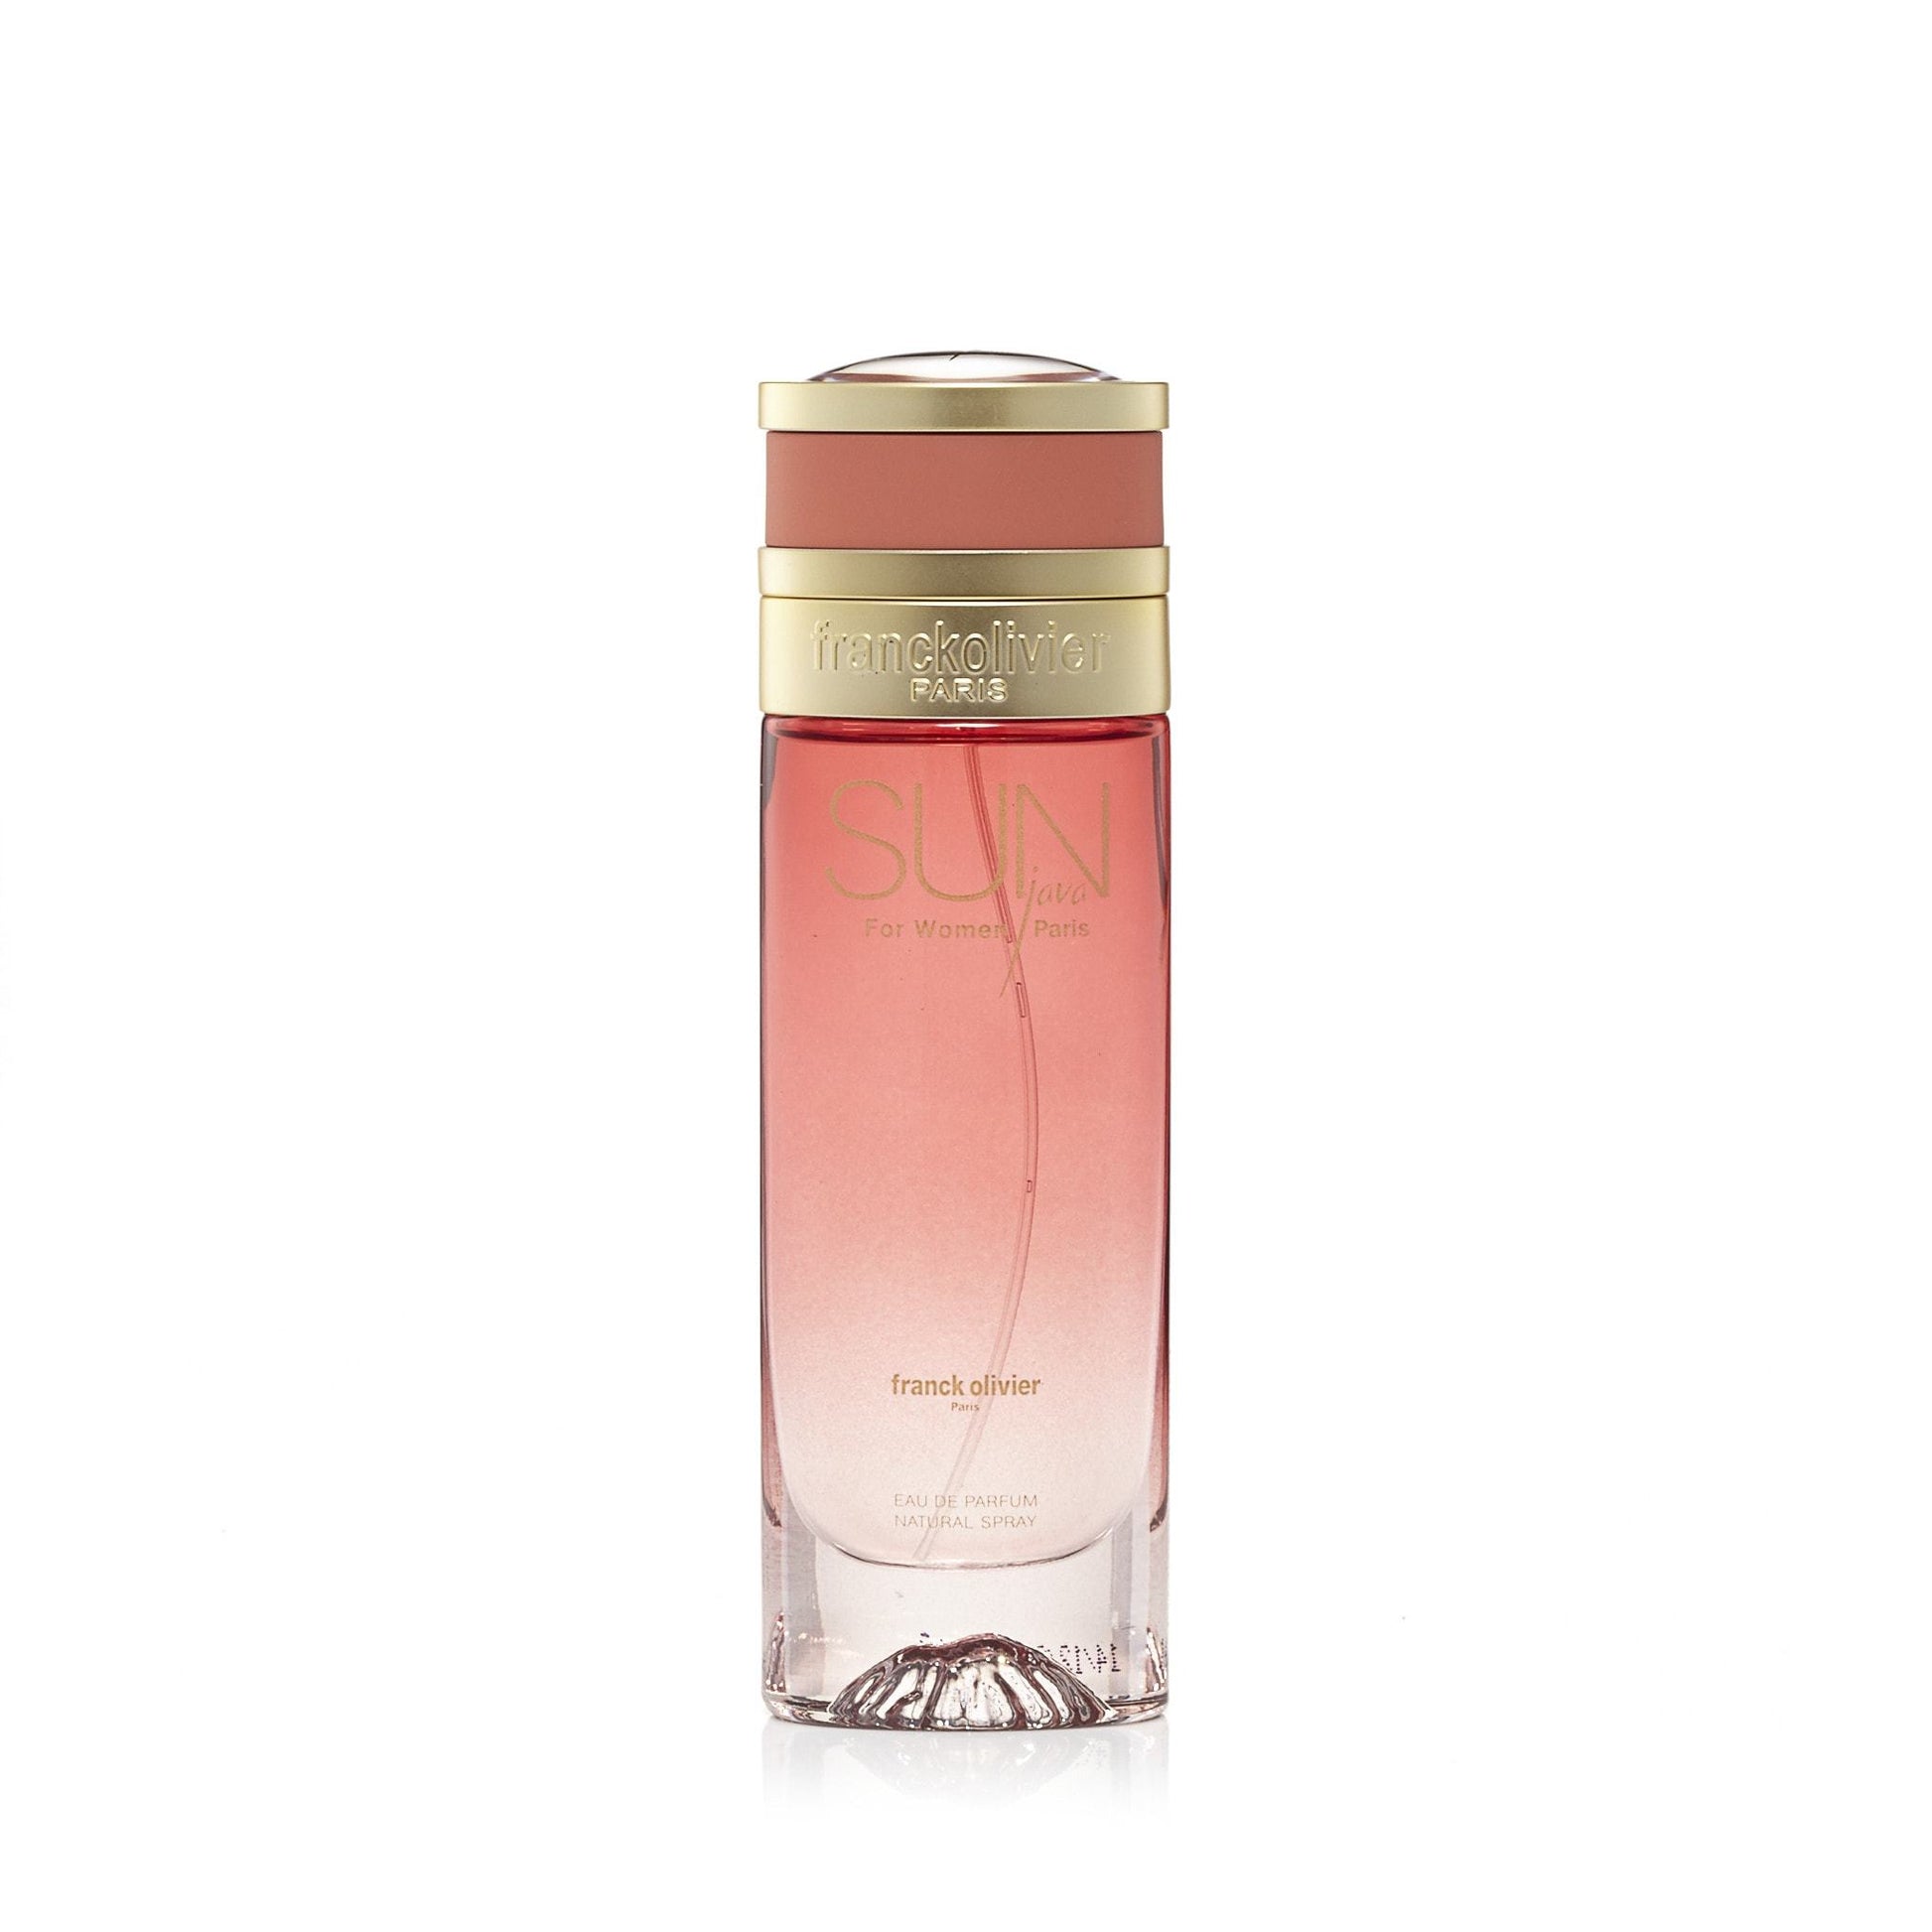 Sun Java Eau de Parfum Spray for Women, Product image 1